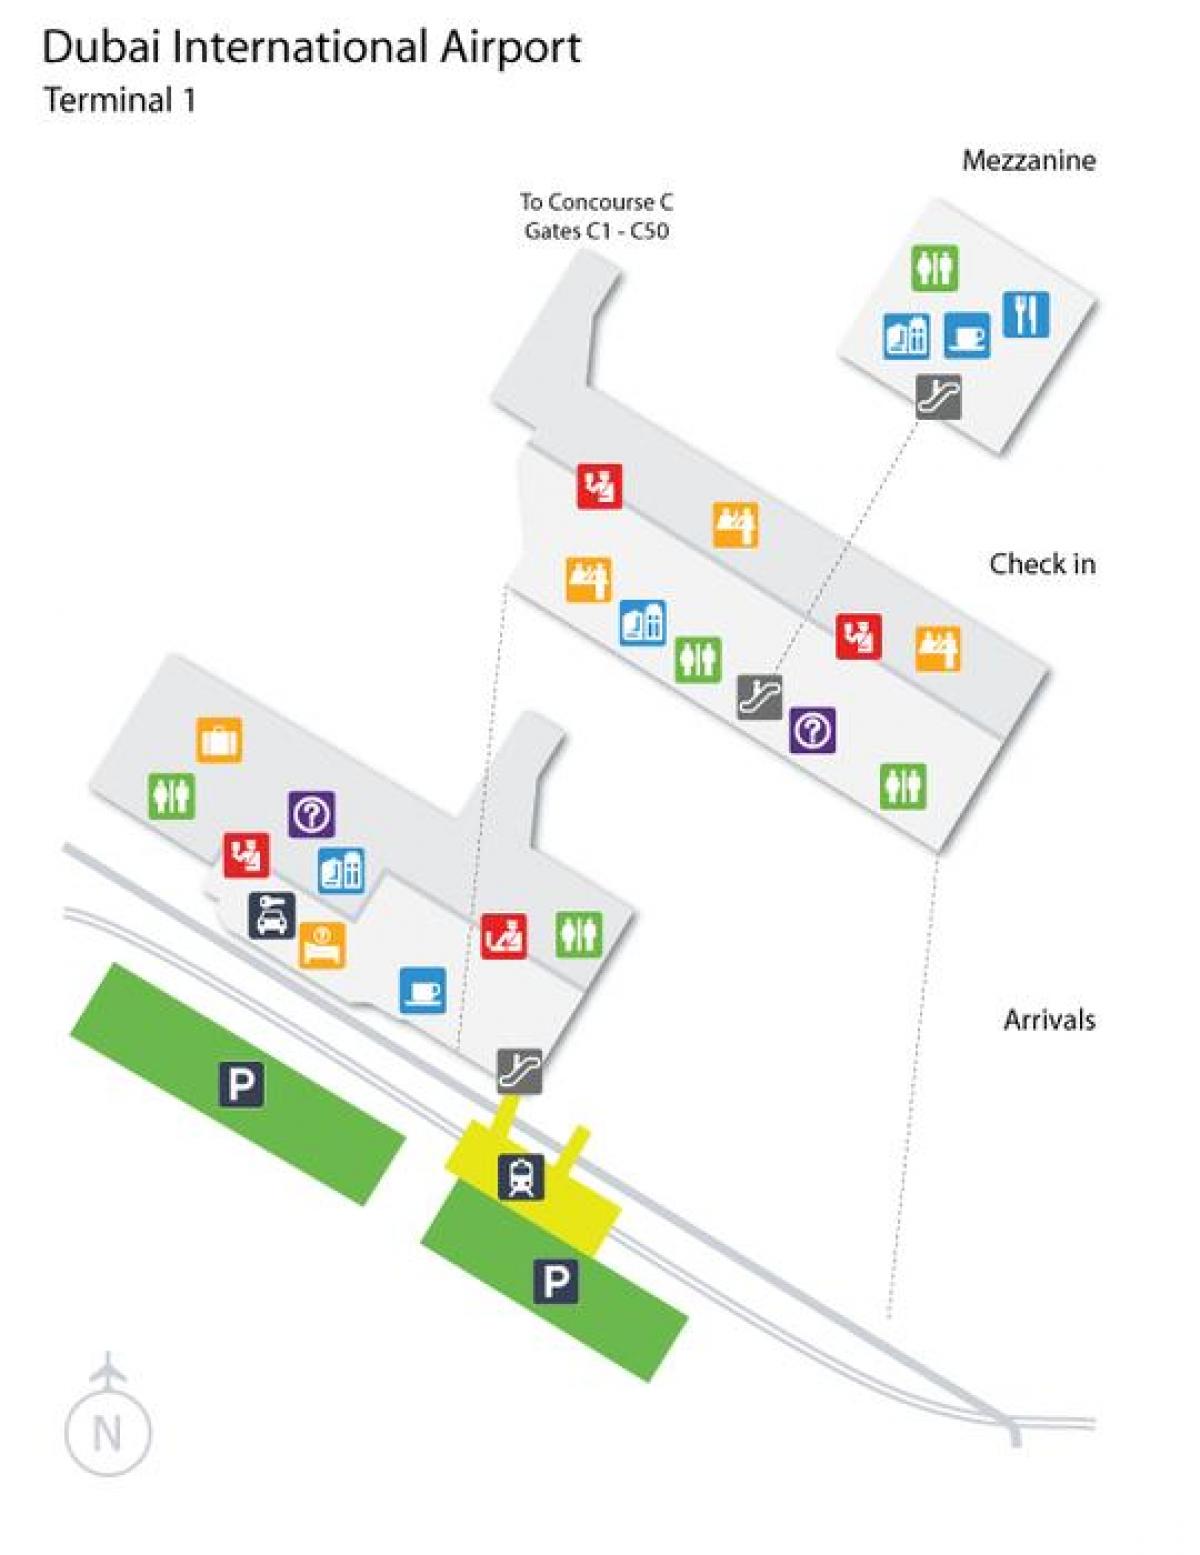 Dubai airport terminal 1 zemljevid z lokacijo